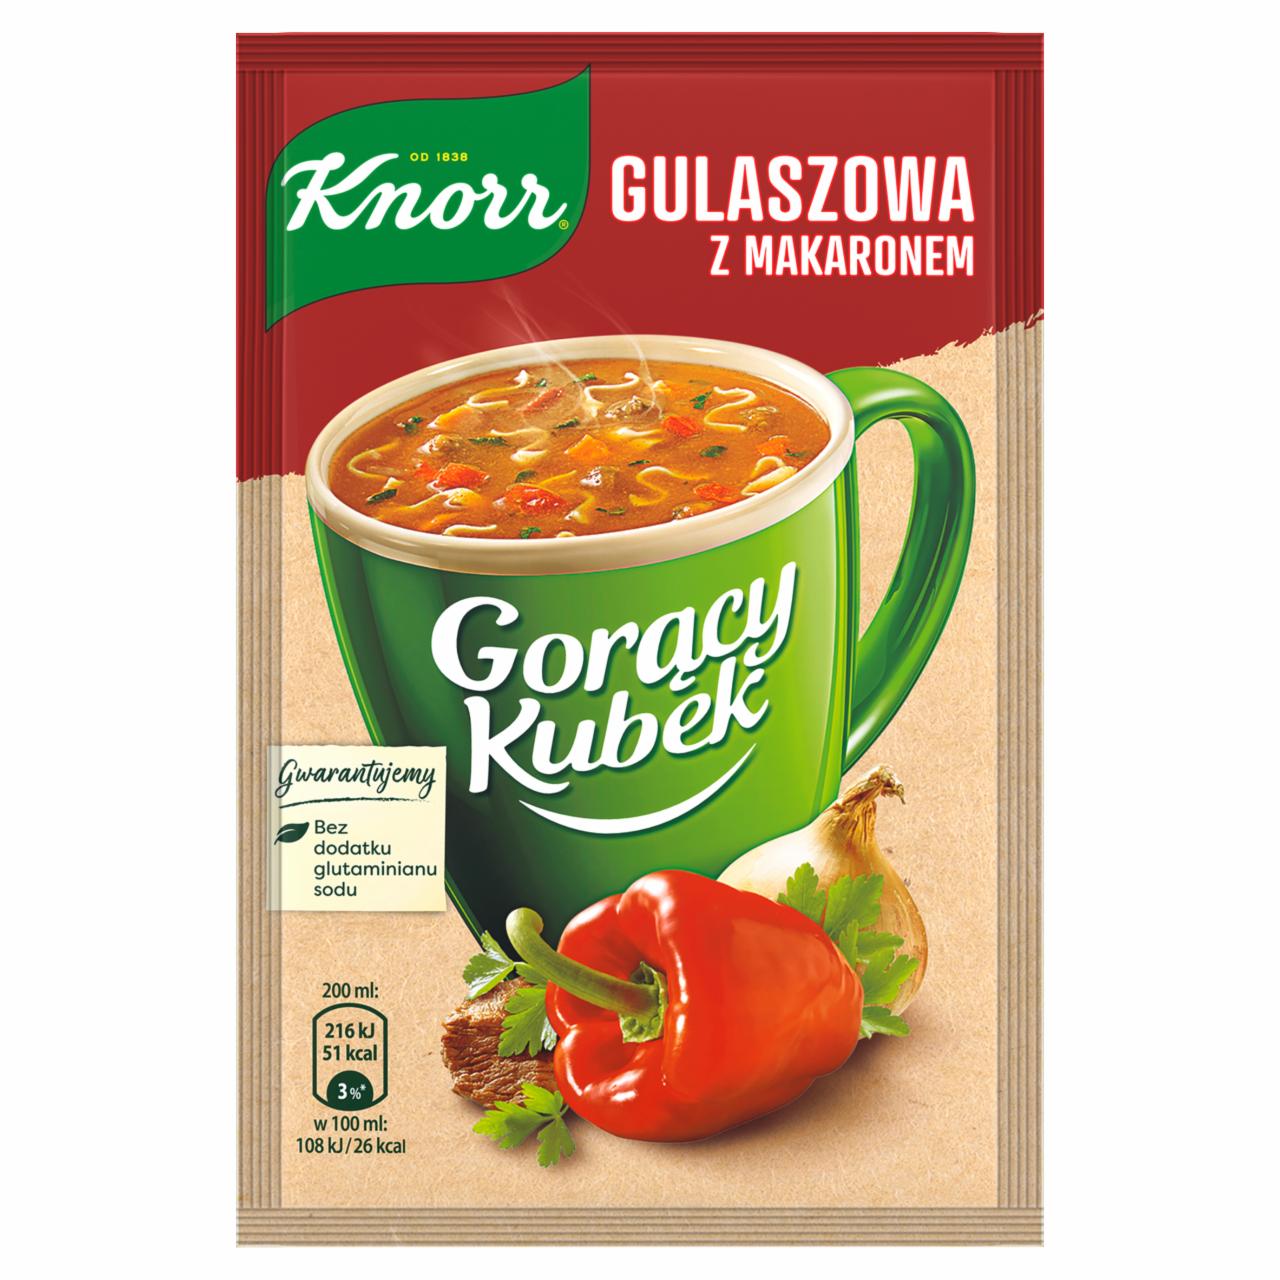 Zdjęcia - Knorr Gorący Kubek Gulaszowa z makaronem 16 g